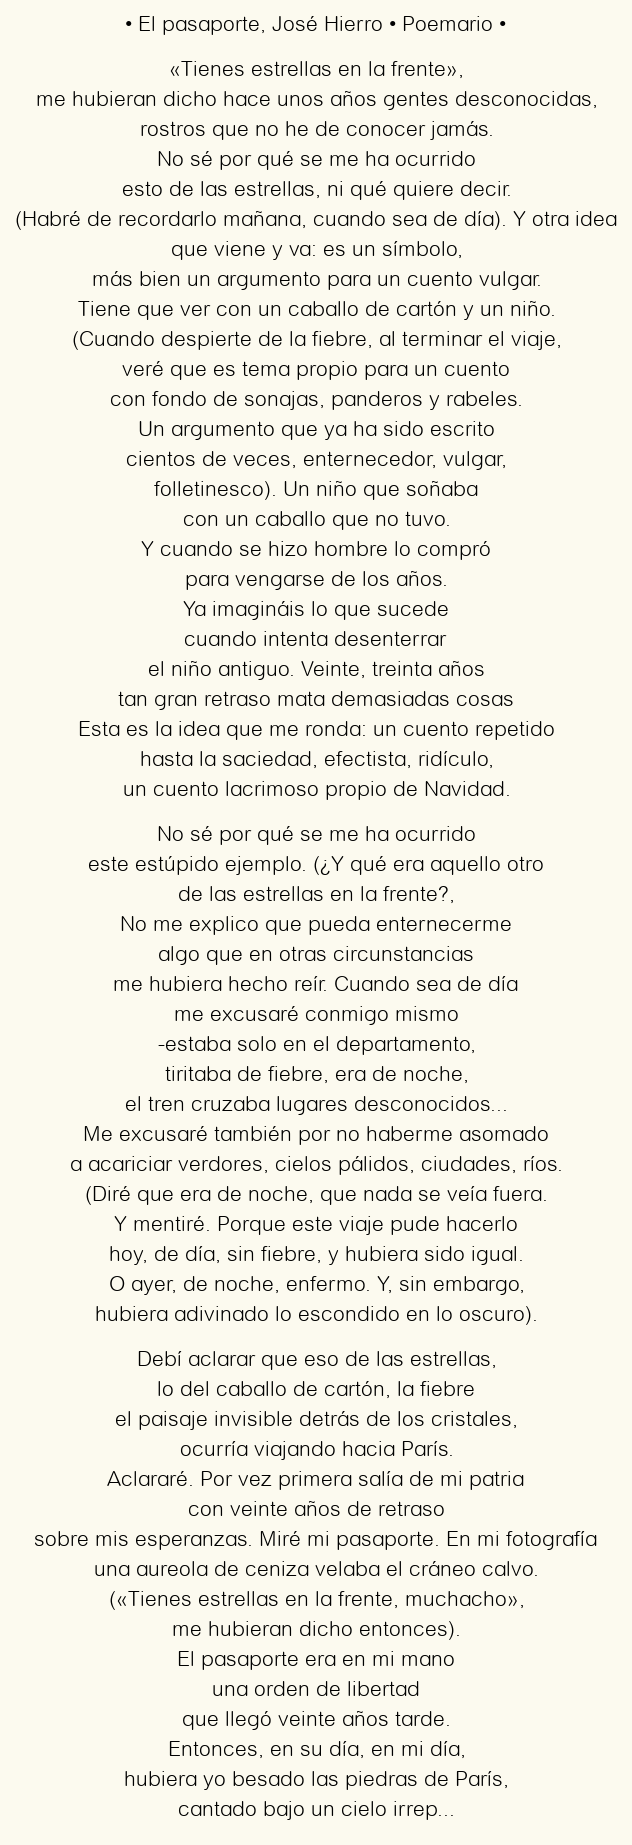 Imagen con el poema El pasaporte, por José Hierro